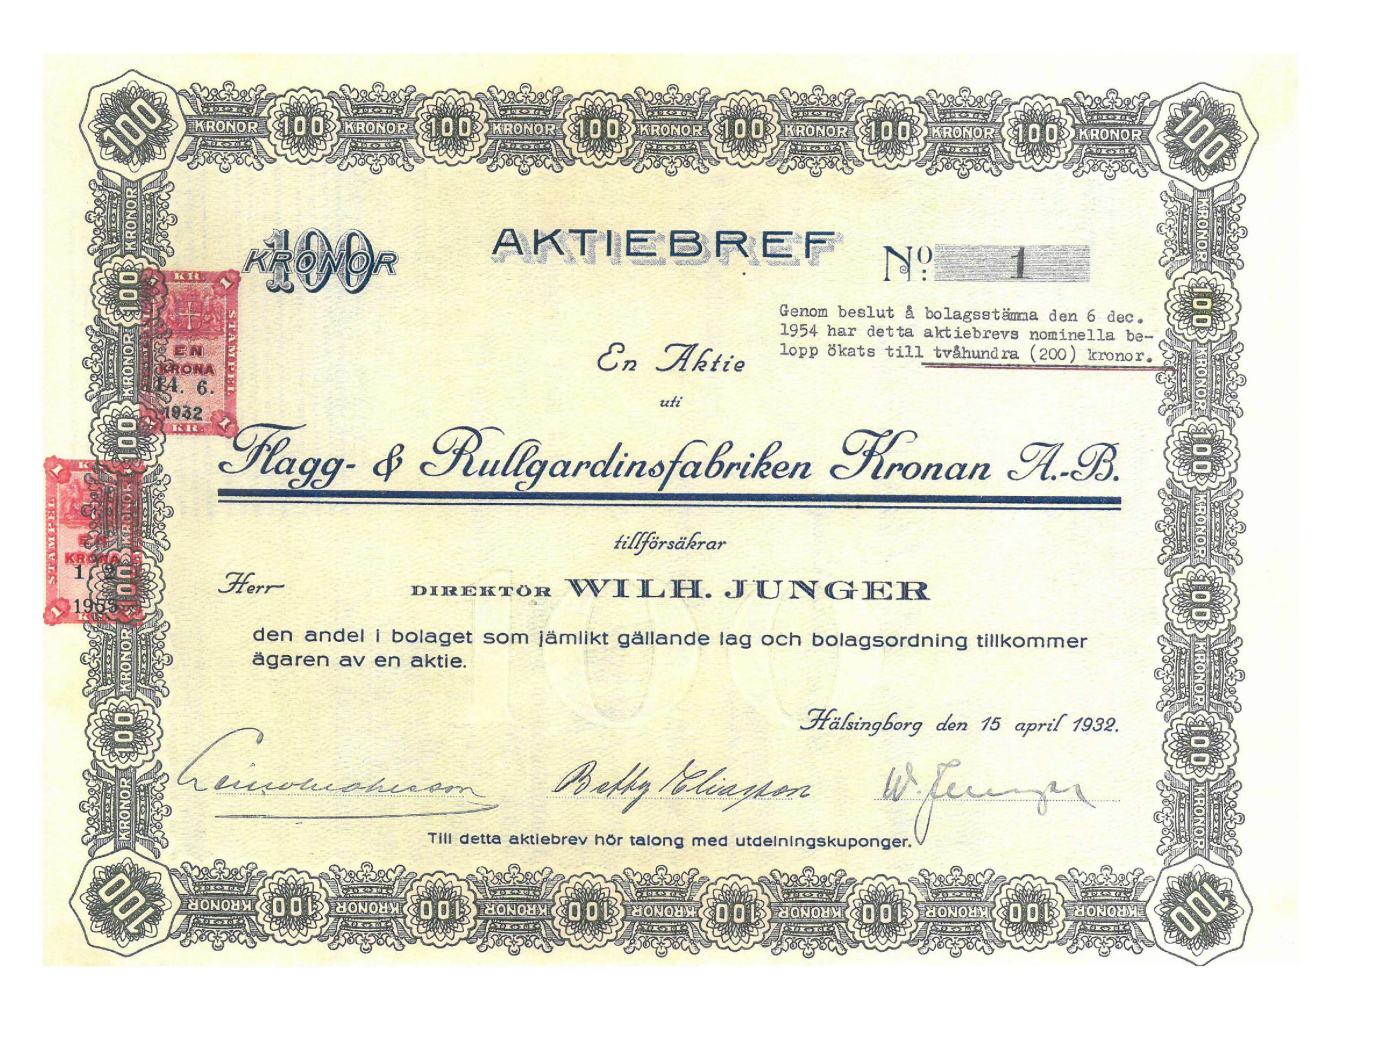 Aktiebrev för Flagg- och rullgardingsfabriken Kronan AB år 1932